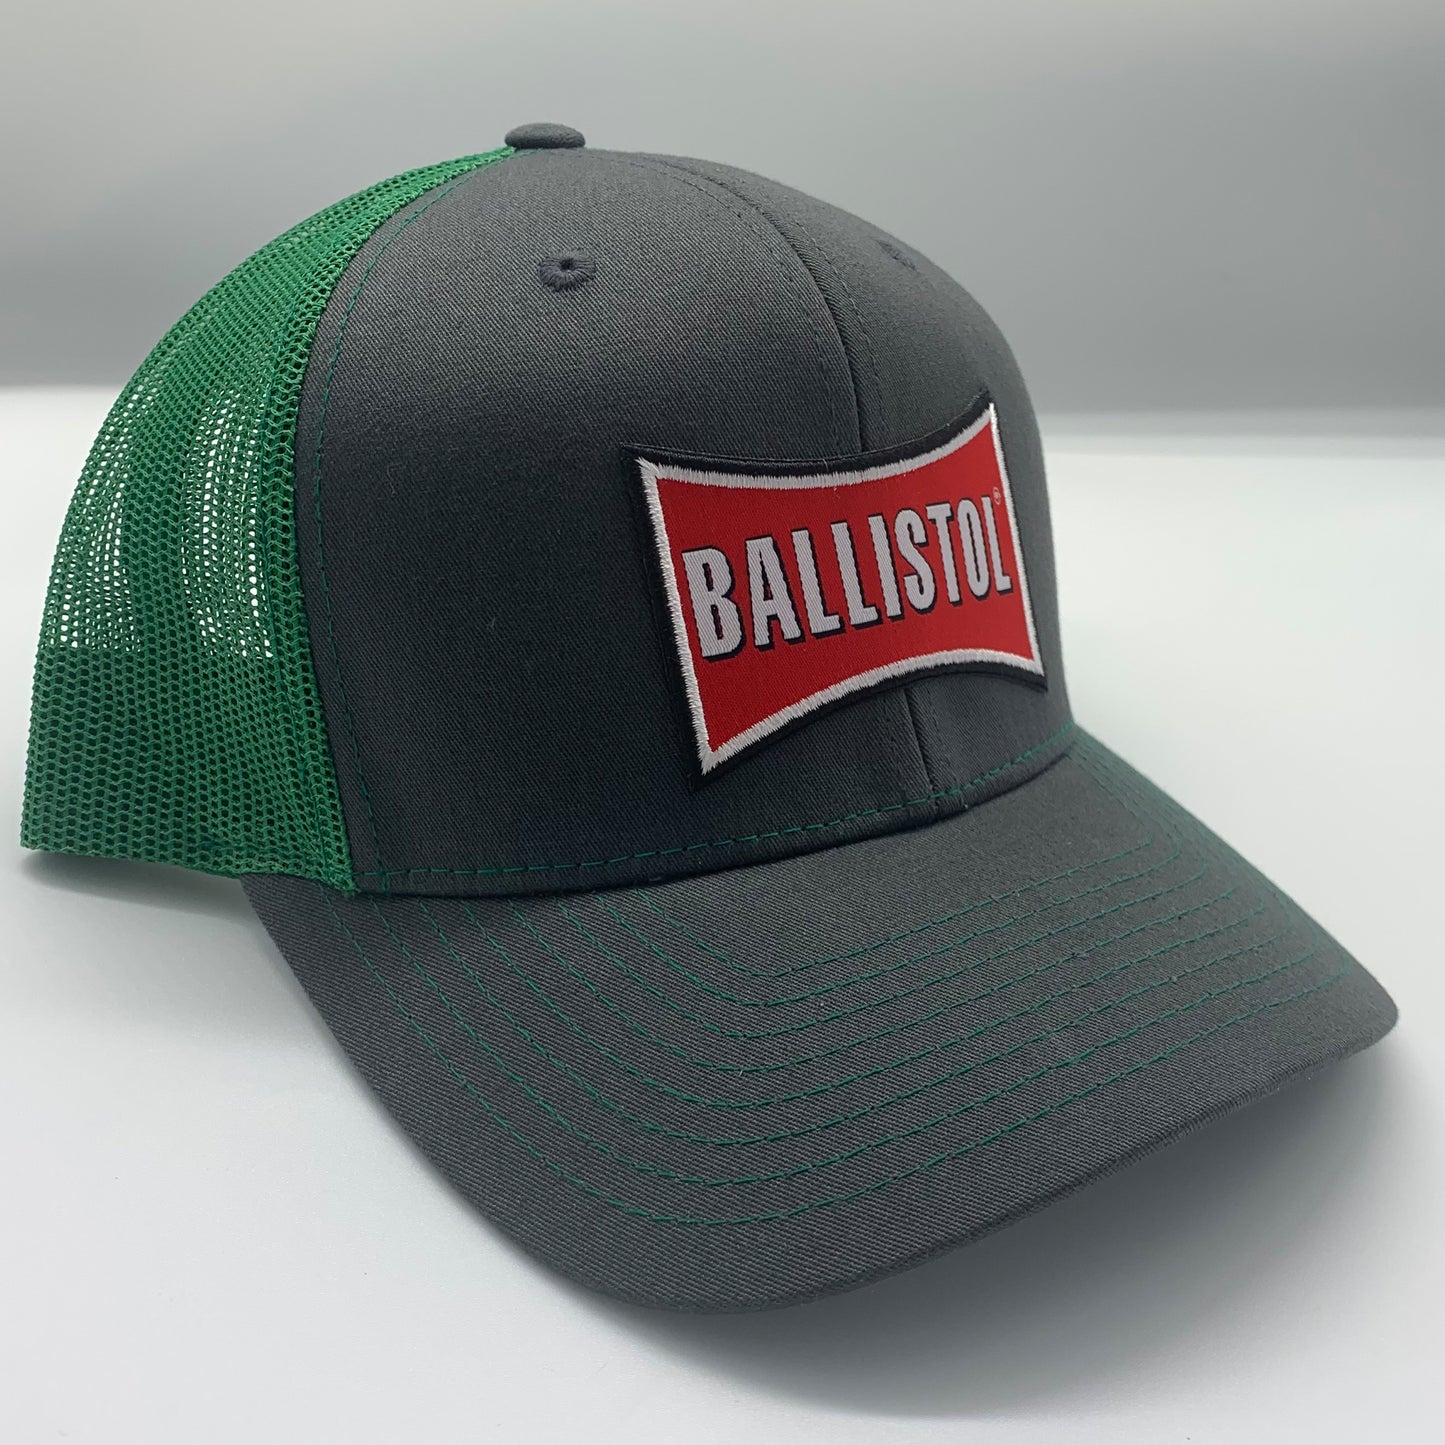 Ballistol Charcoal/Green Cap